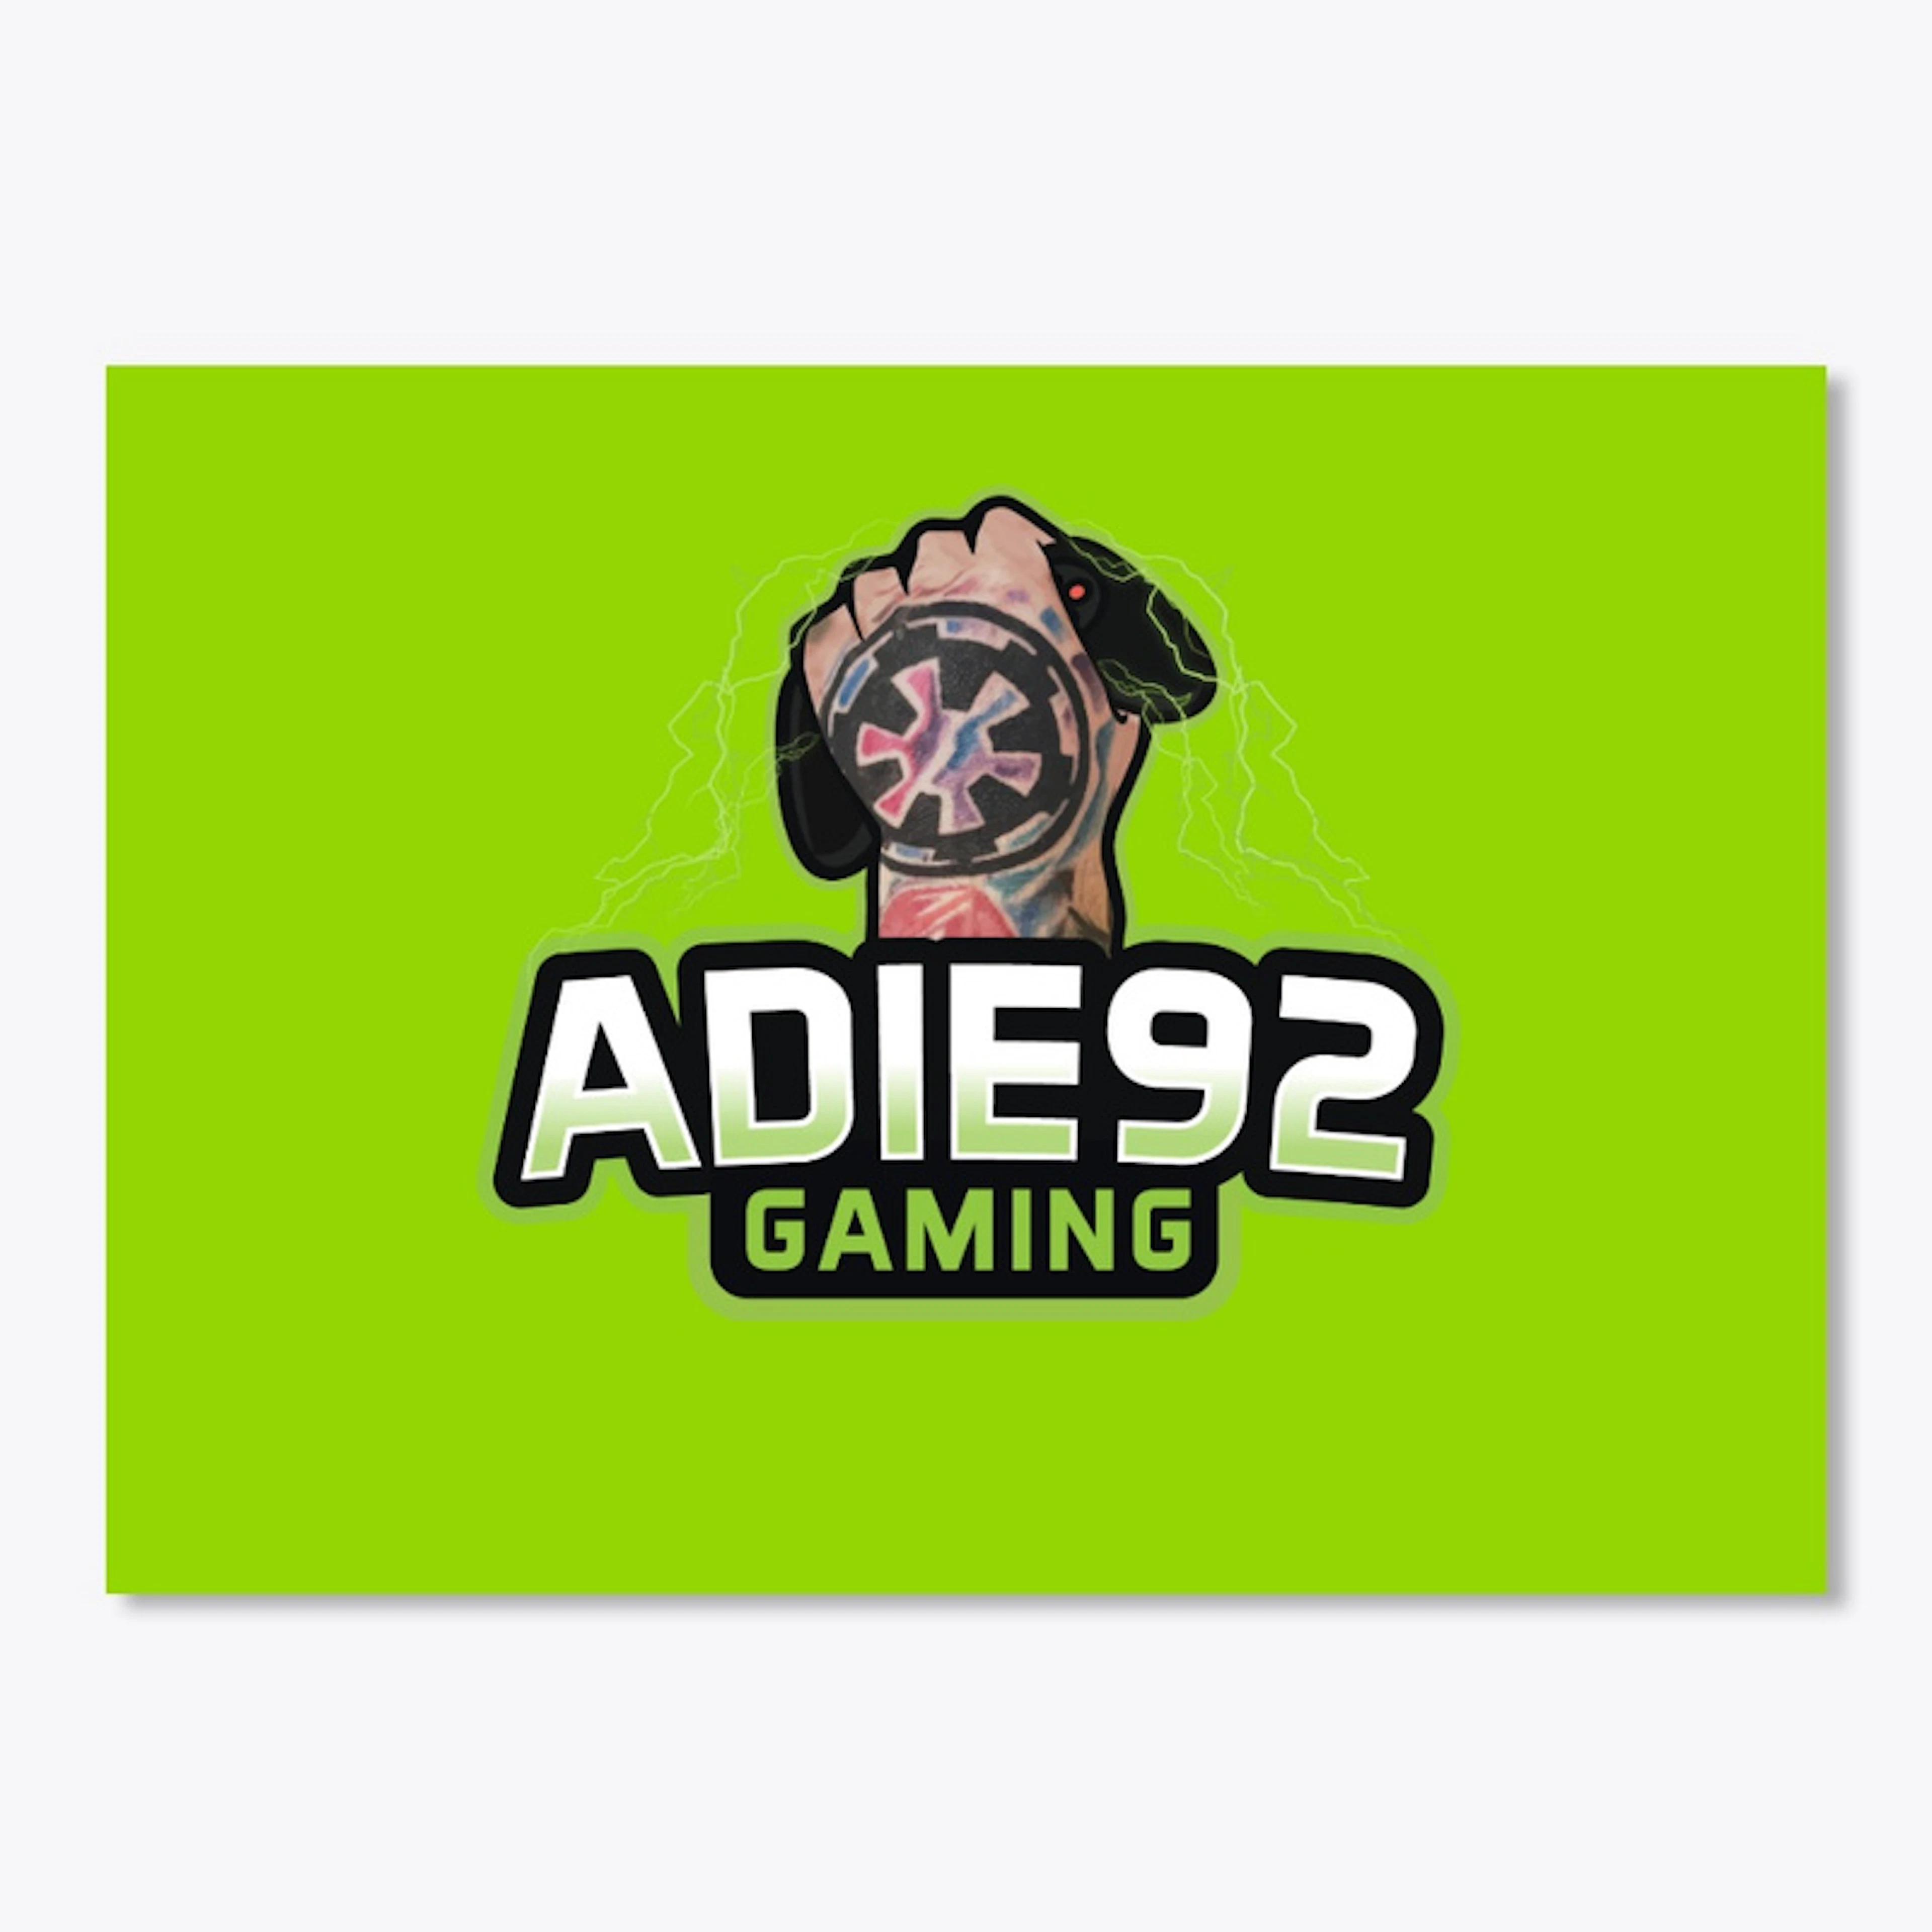 Adie92 Sticker (New Logo)